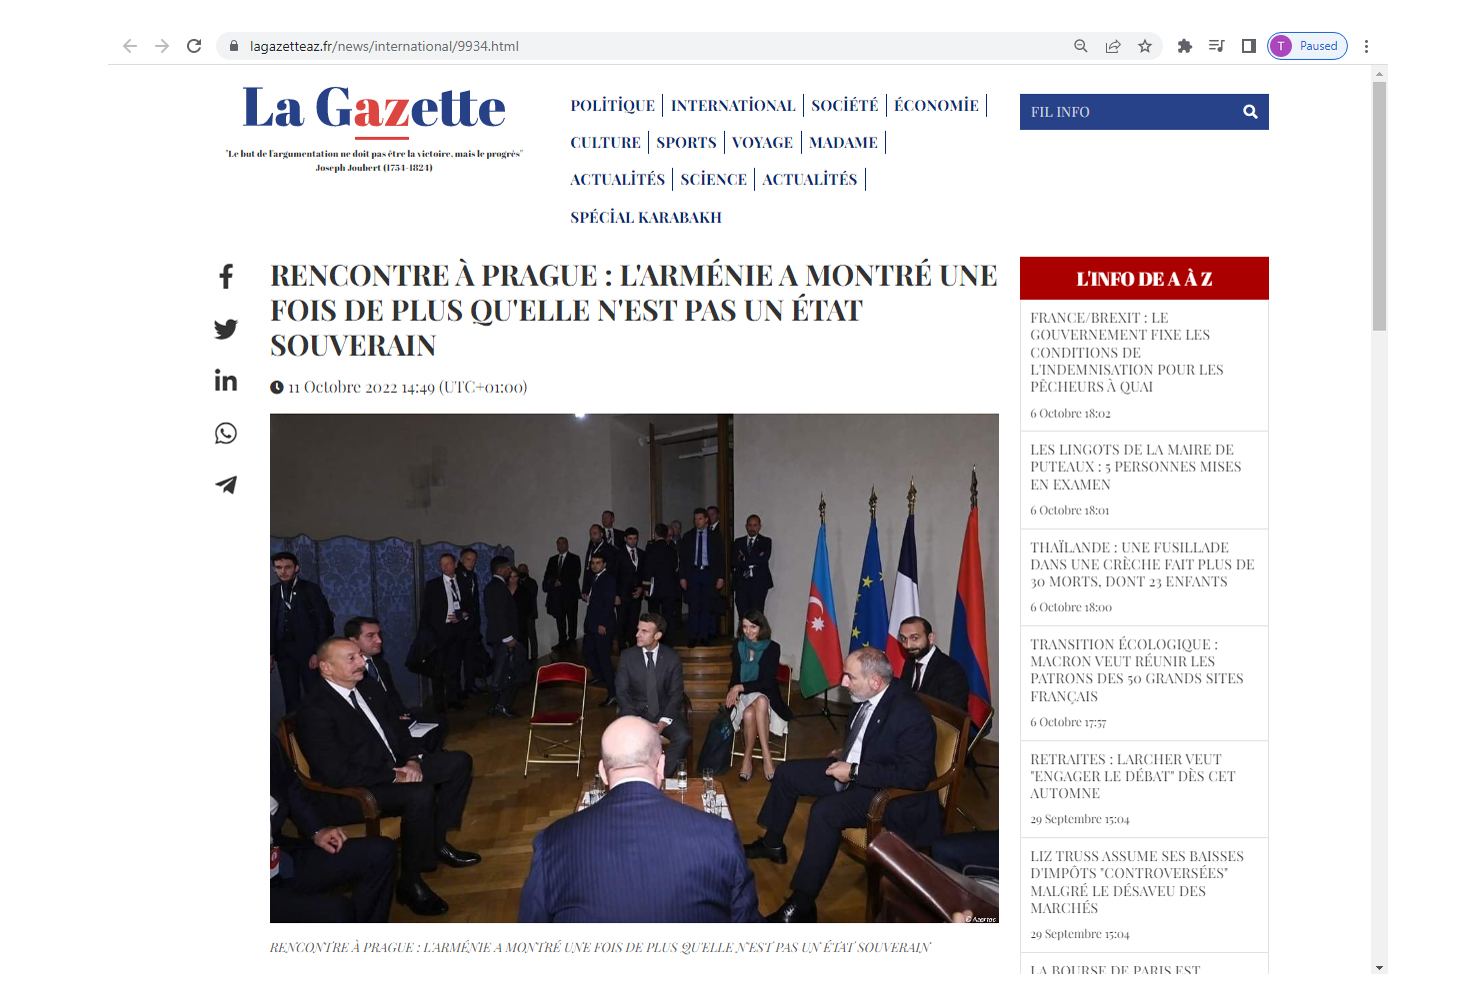 Les médias français ont publié un article sur la position ferme de l’Azerbaïdjan lors de la réunion à Prague